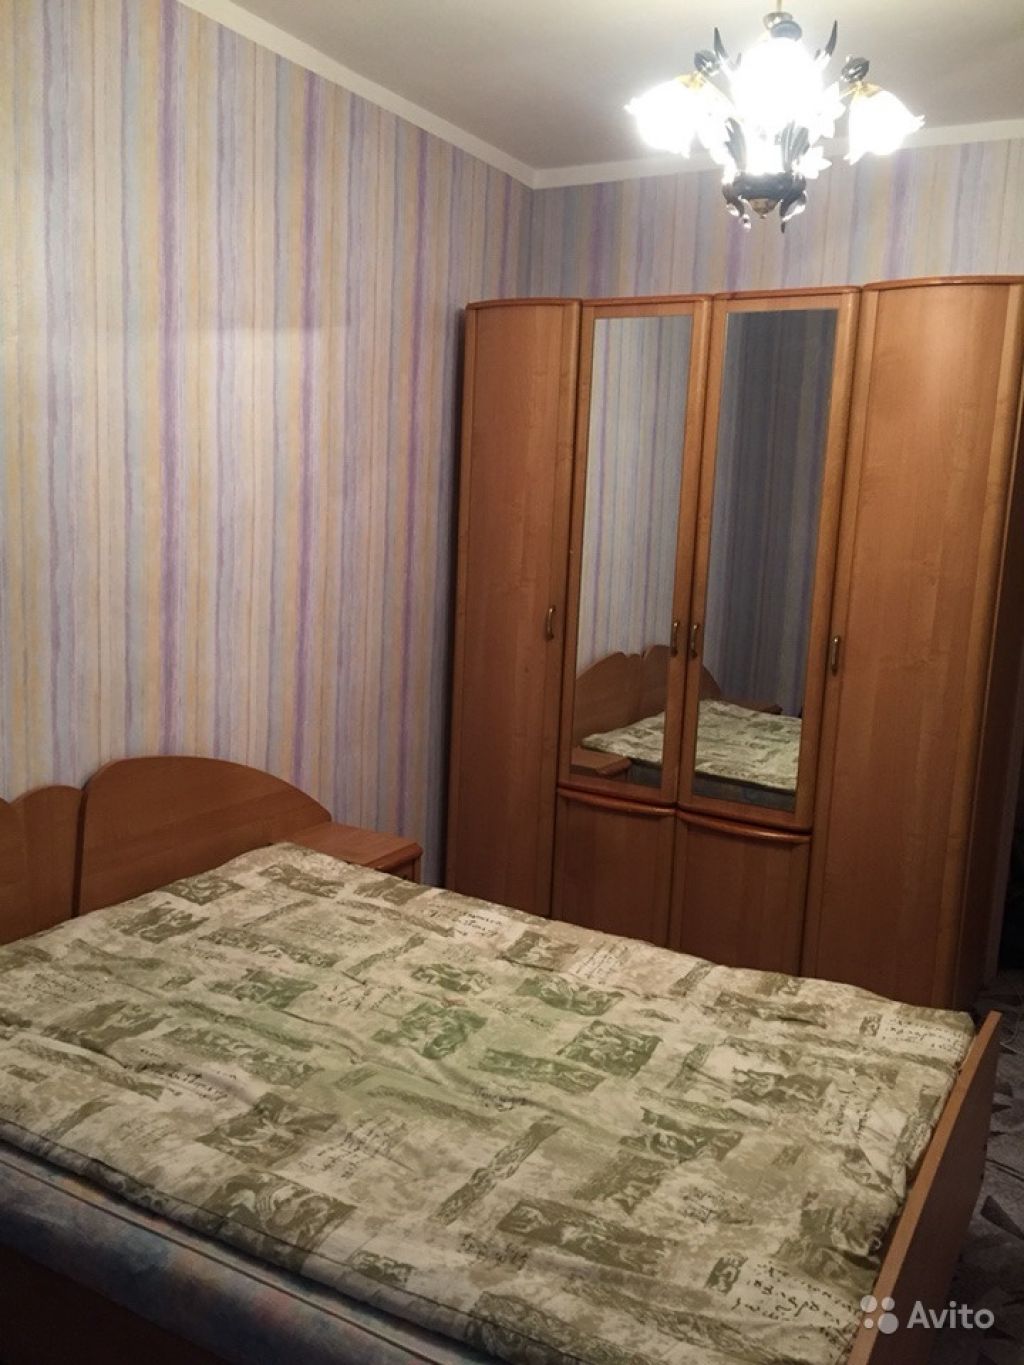 Сдам квартиру 3-к квартира 60 м² на 3 этаже 5-этажного панельного дома в Москве. Фото 1